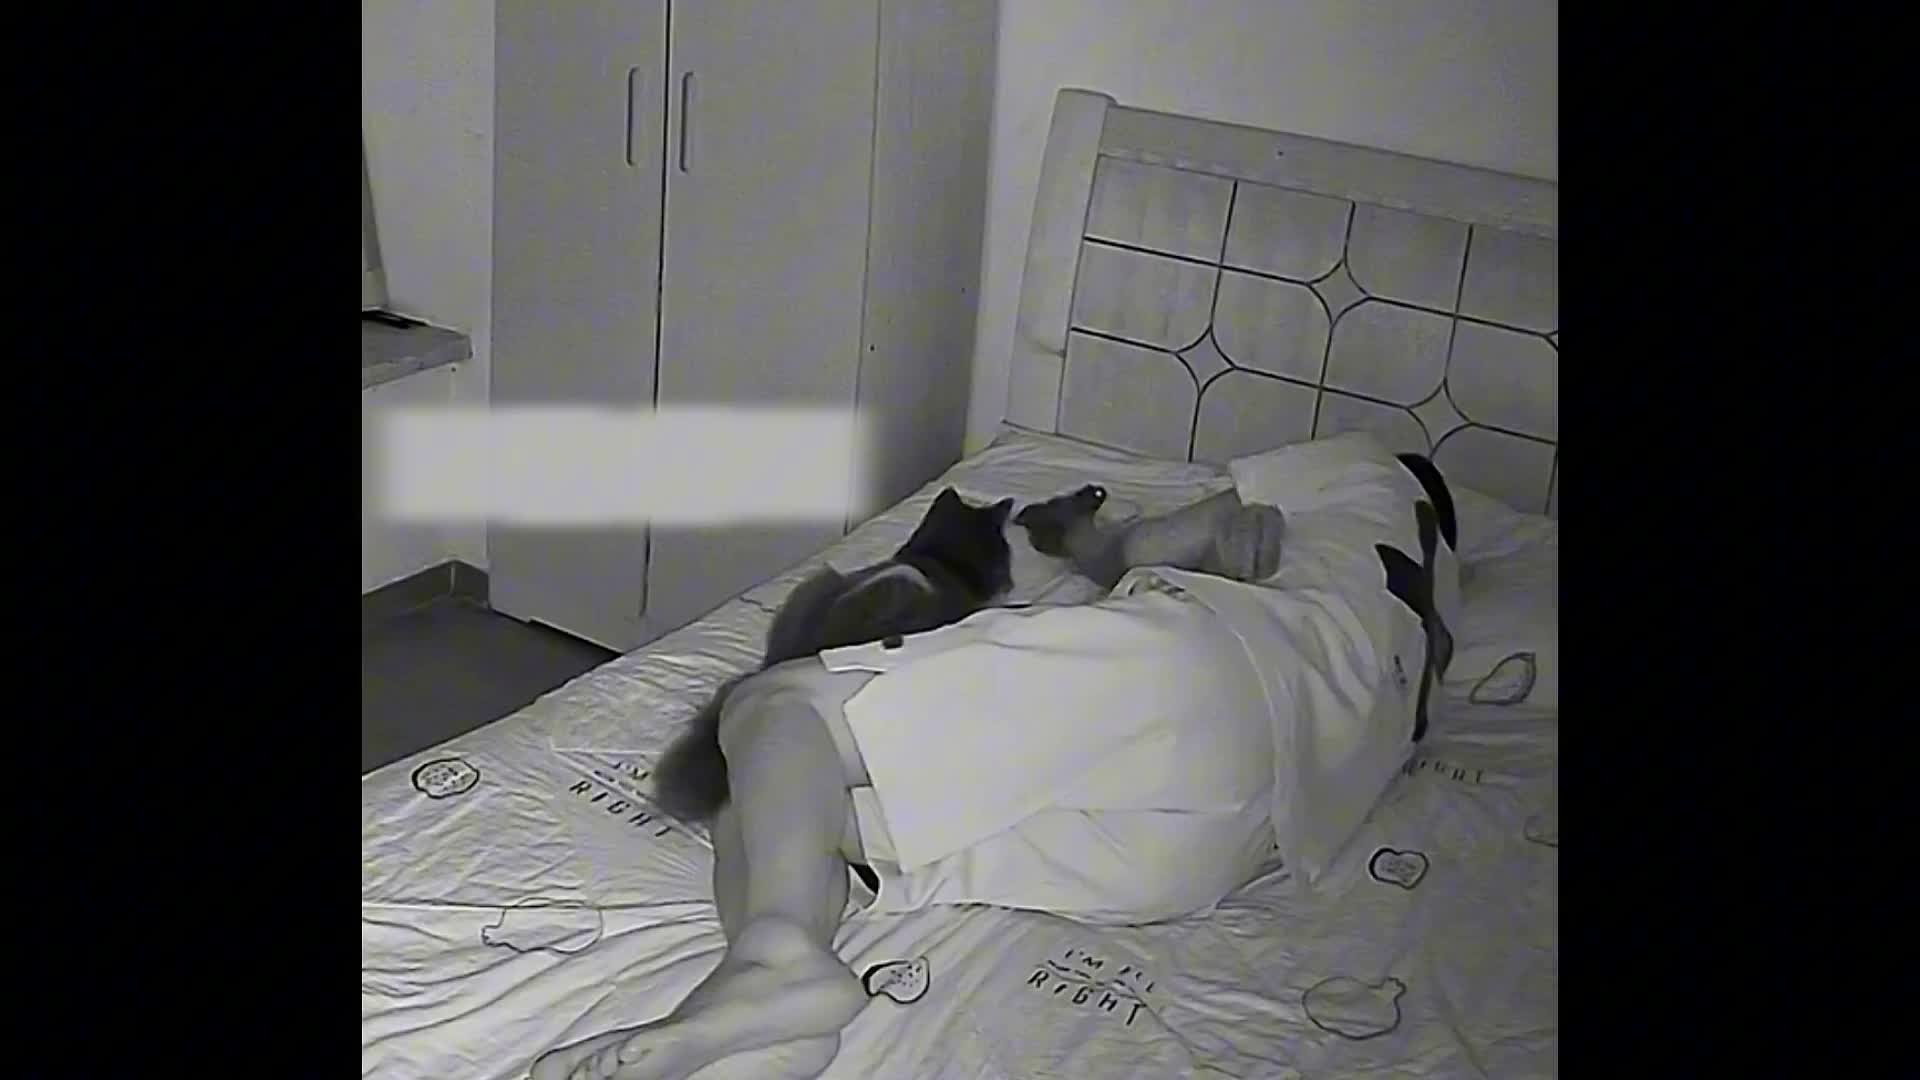 Video - Clip: Kinh hoàng mèo đưa cóc lên giường trong lúc chủ nhân đang ngủ